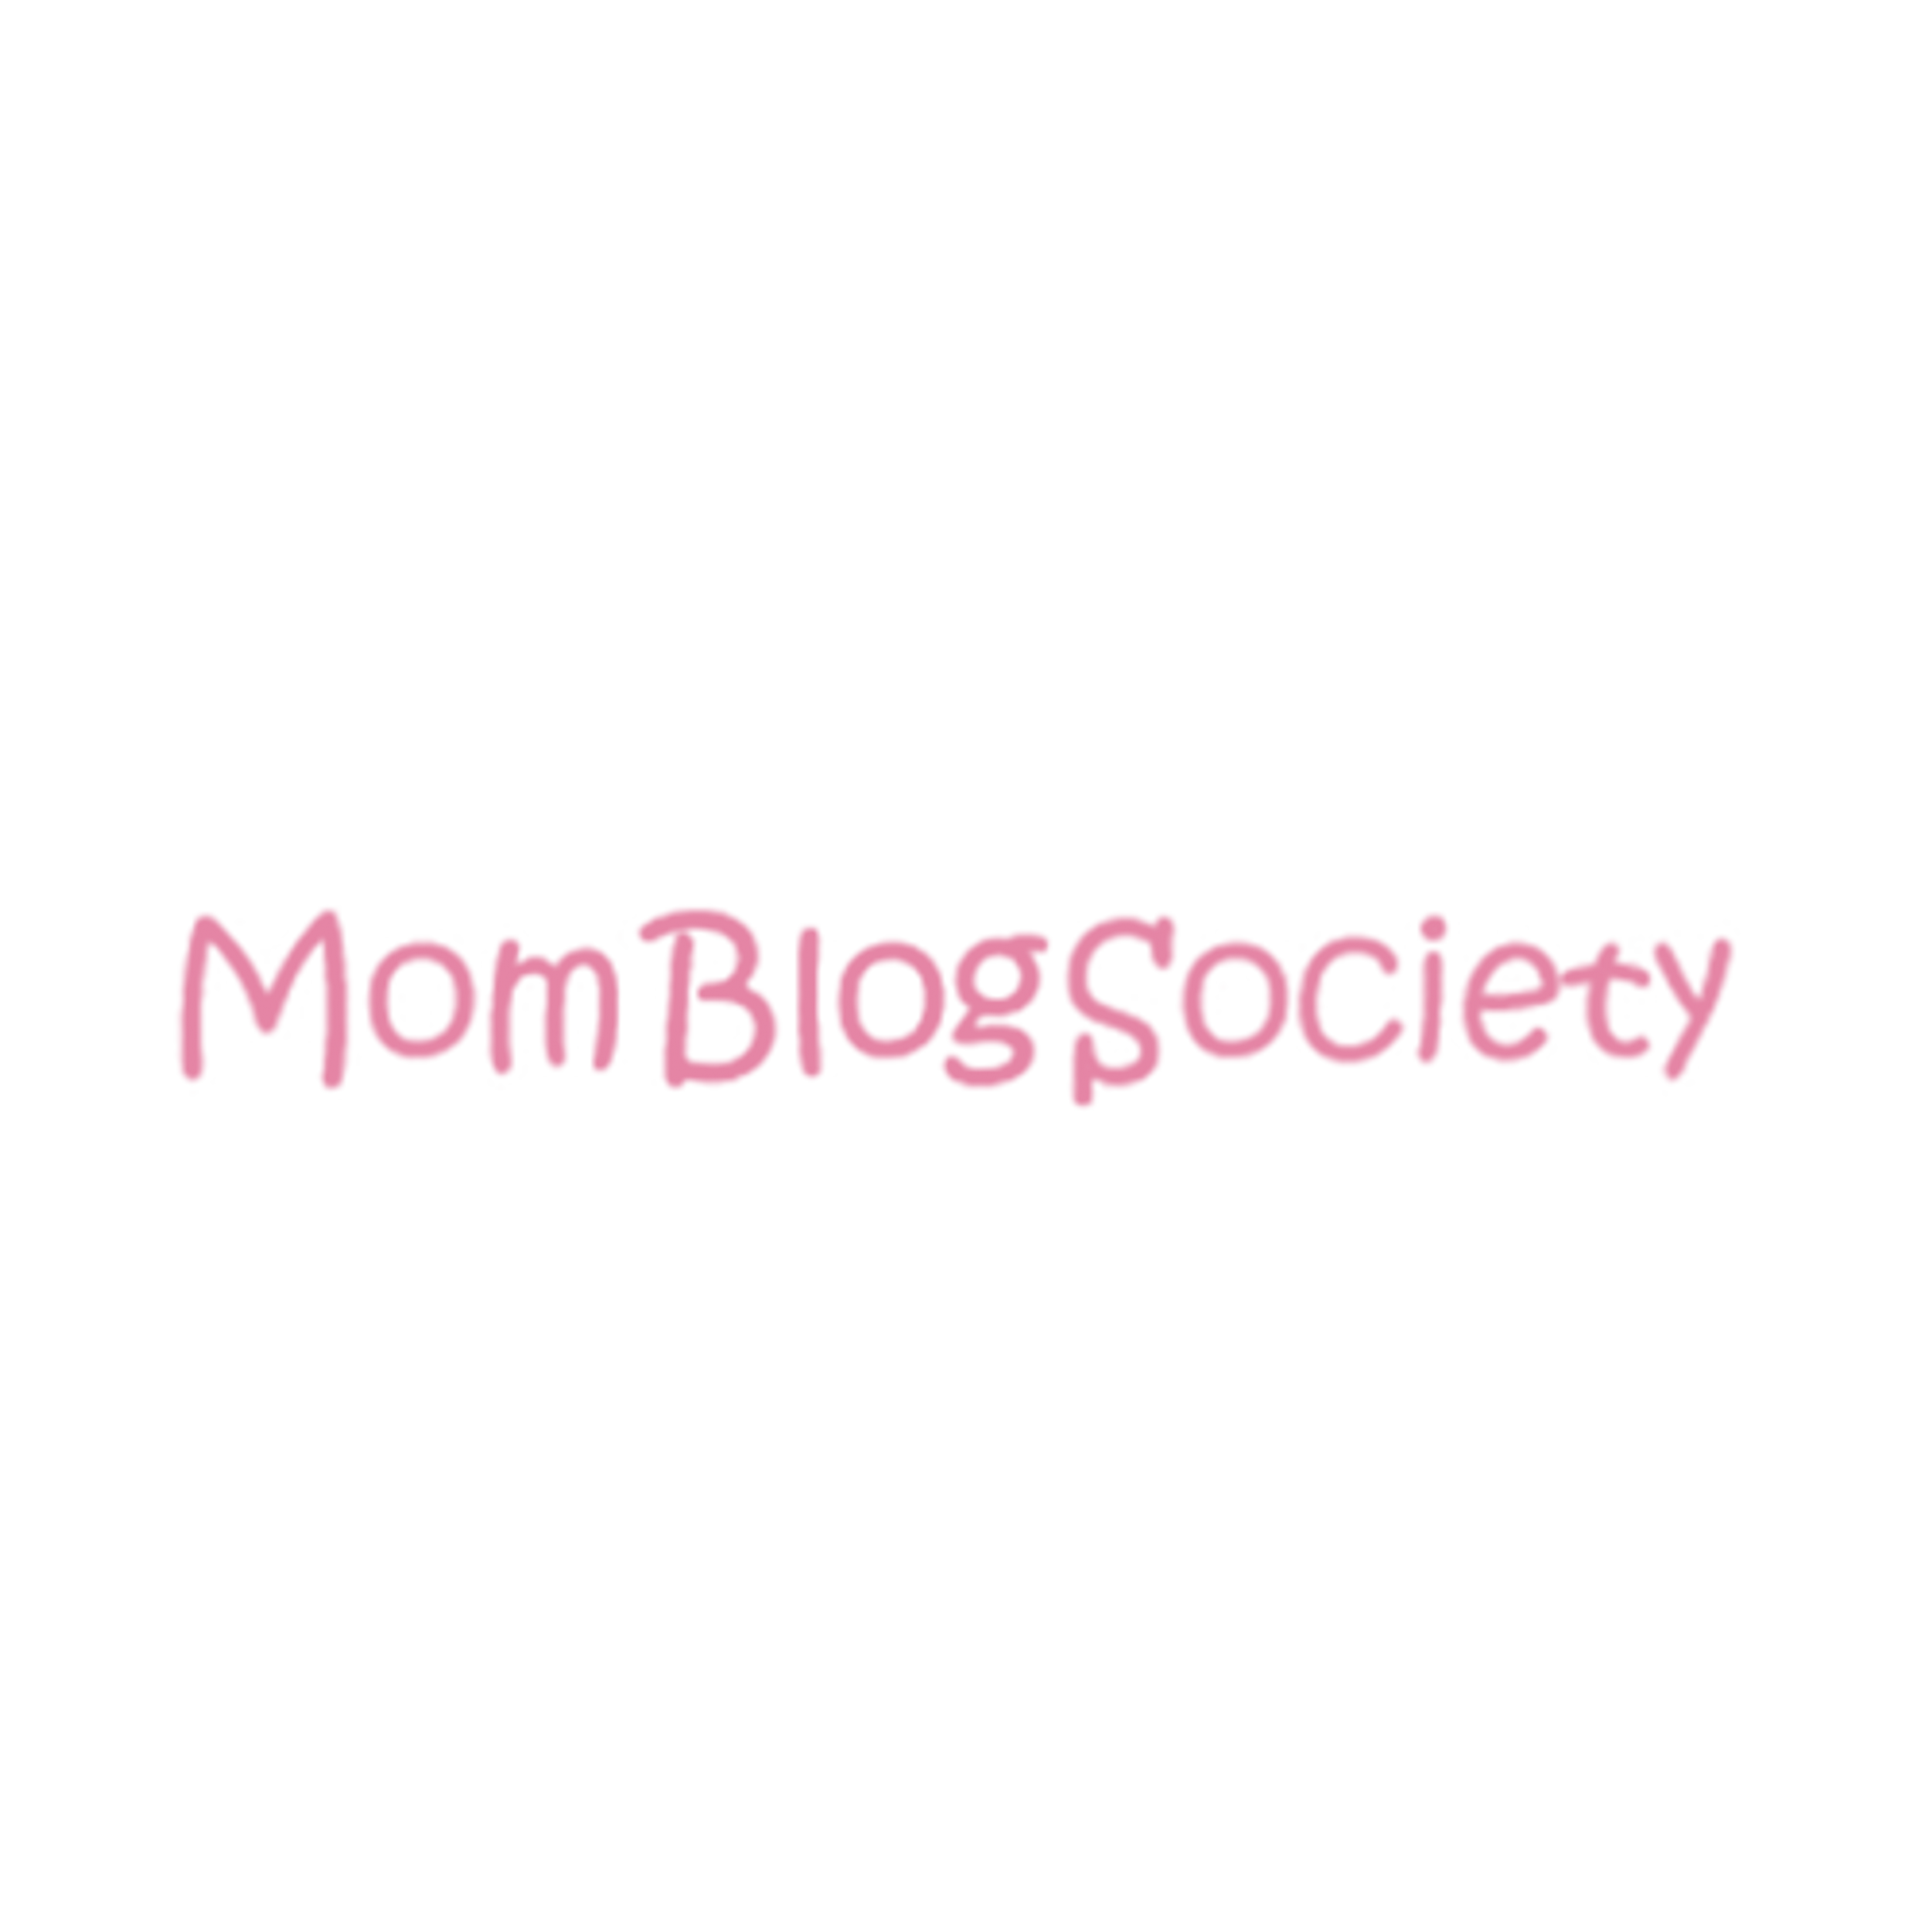 Mom Blog Society logo